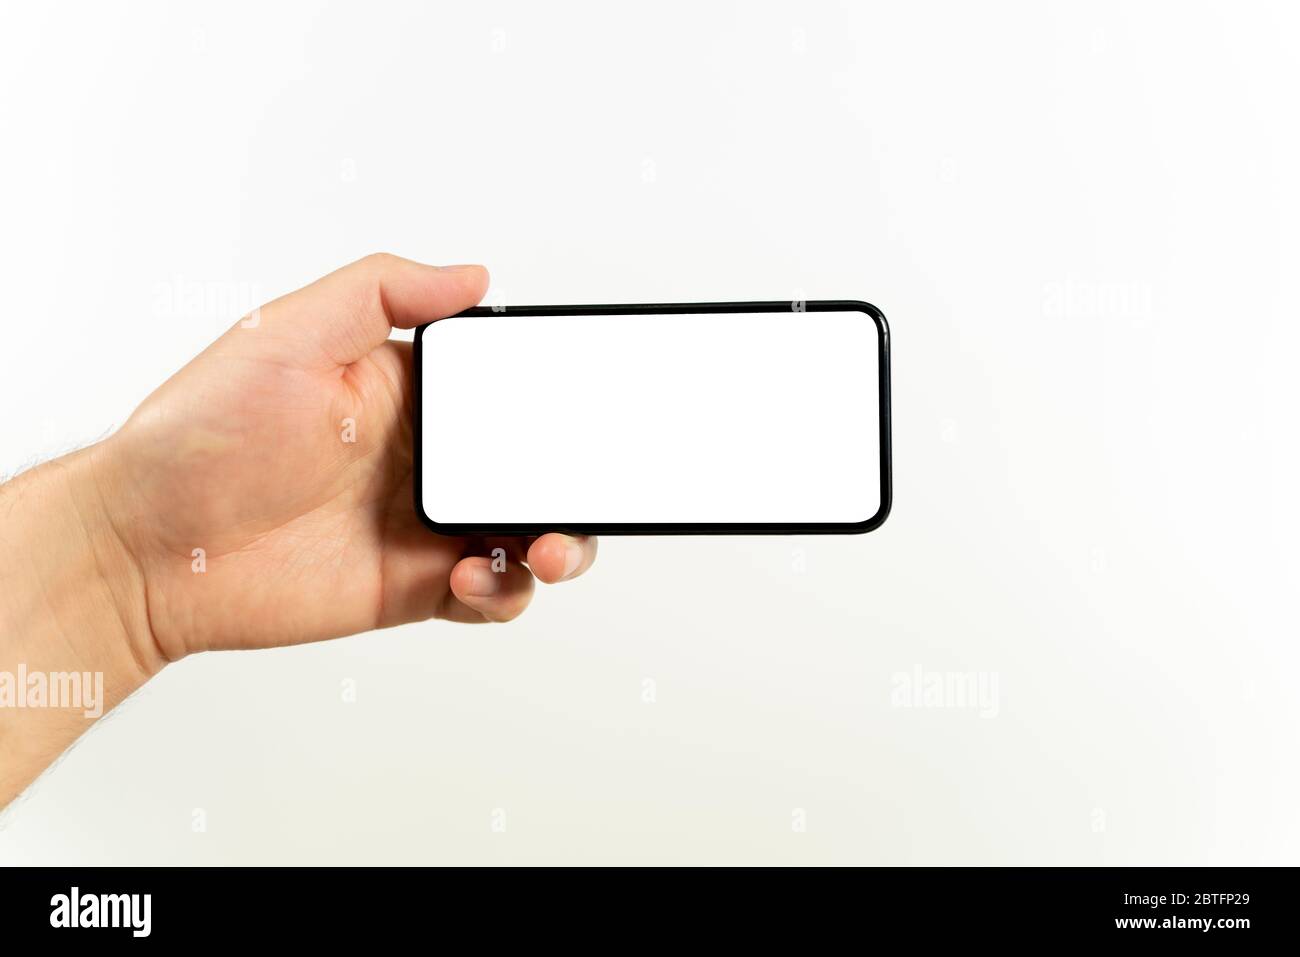 Mann Hand hält das schwarze Smartphone mit leerem Bildschirm und modernen rahmenlosen Design positioniert horizontal - isoliert auf weißem Hintergrund Stockfoto